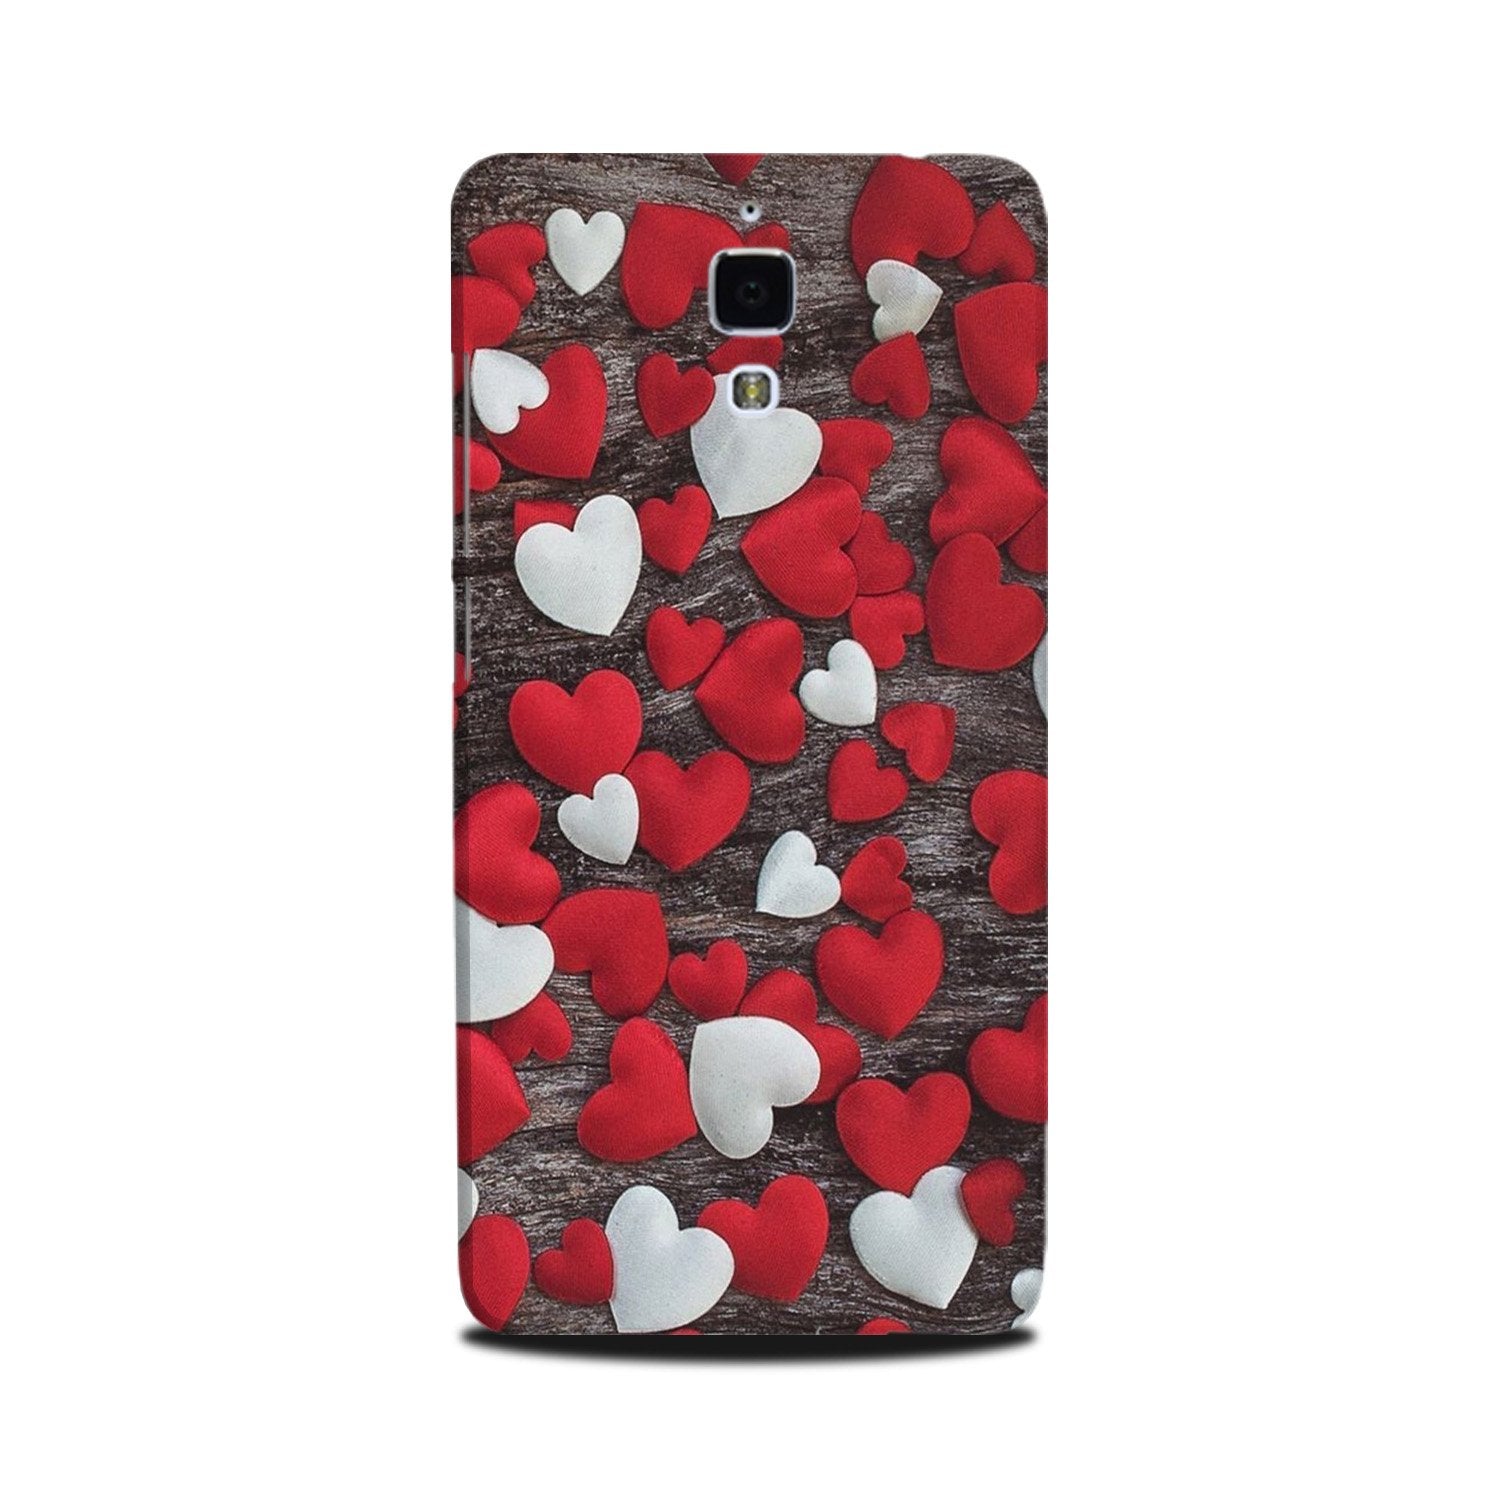 Red White Hearts Case for Mi 4(Design - 105)